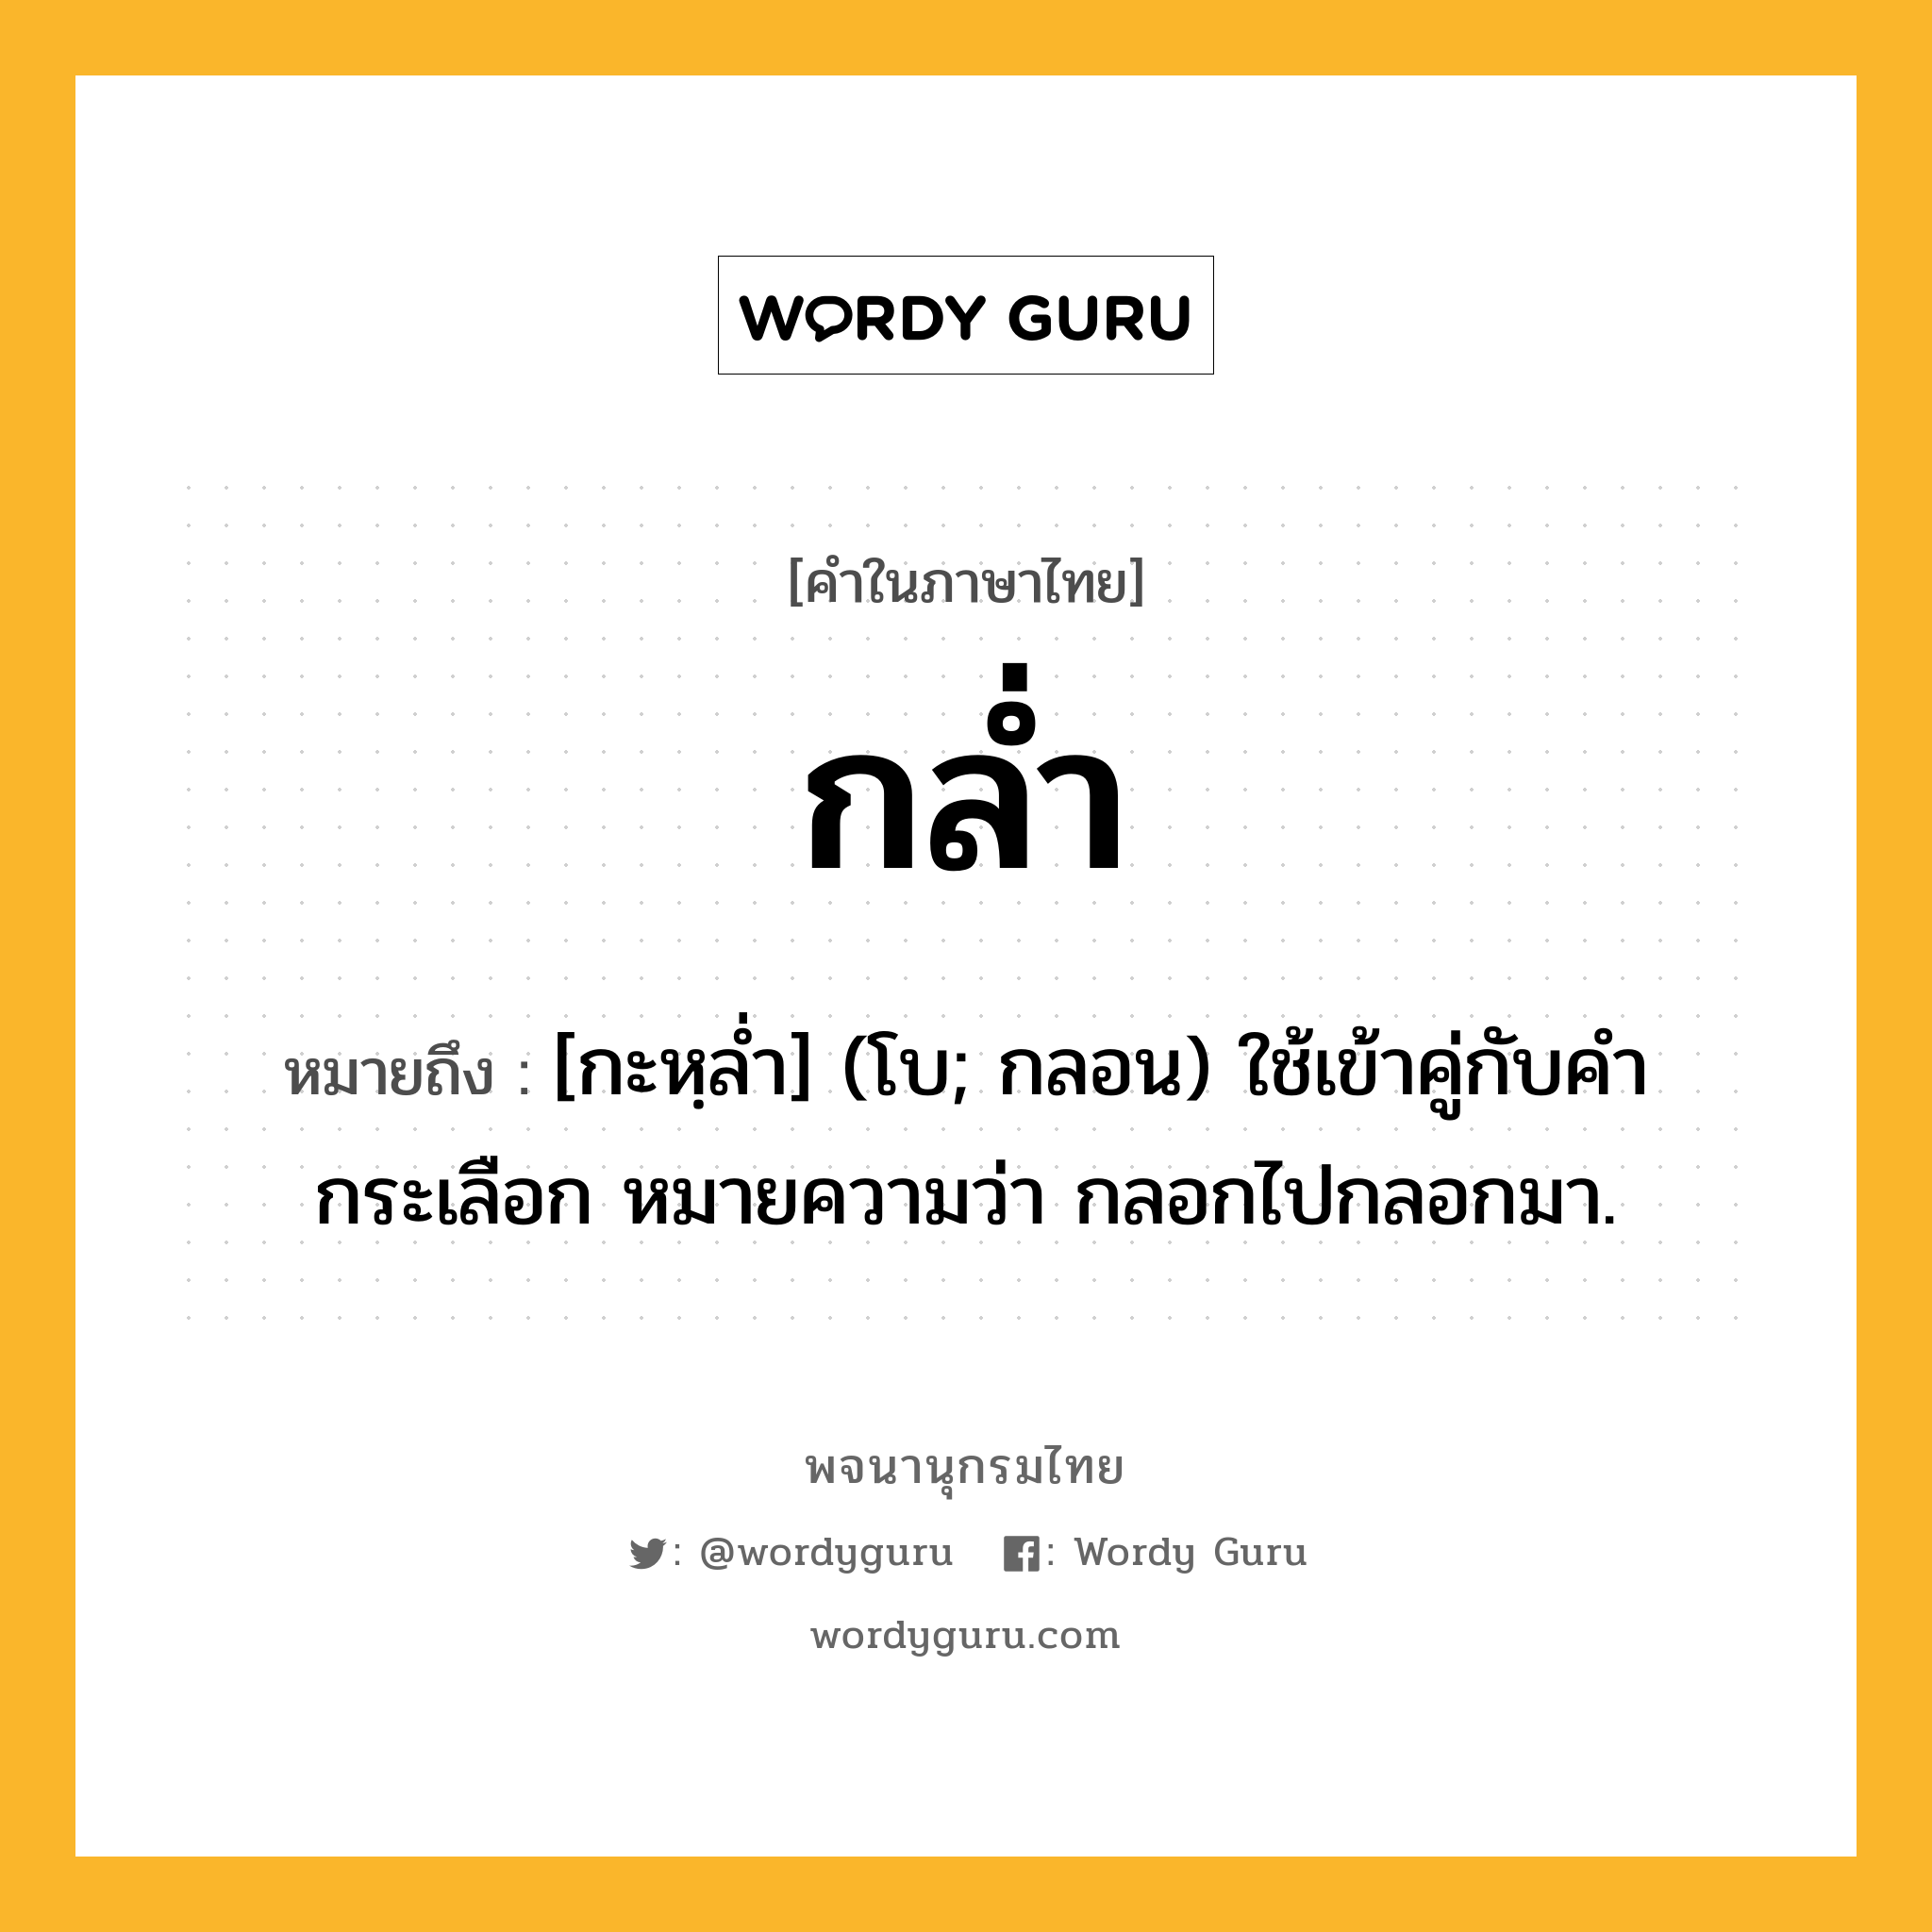 กล่ำ ความหมาย หมายถึงอะไร?, คำในภาษาไทย กล่ำ หมายถึง [กะหฺลํ่า] (โบ; กลอน) ใช้เข้าคู่กับคํา กระเลือก หมายความว่า กลอกไปกลอกมา.